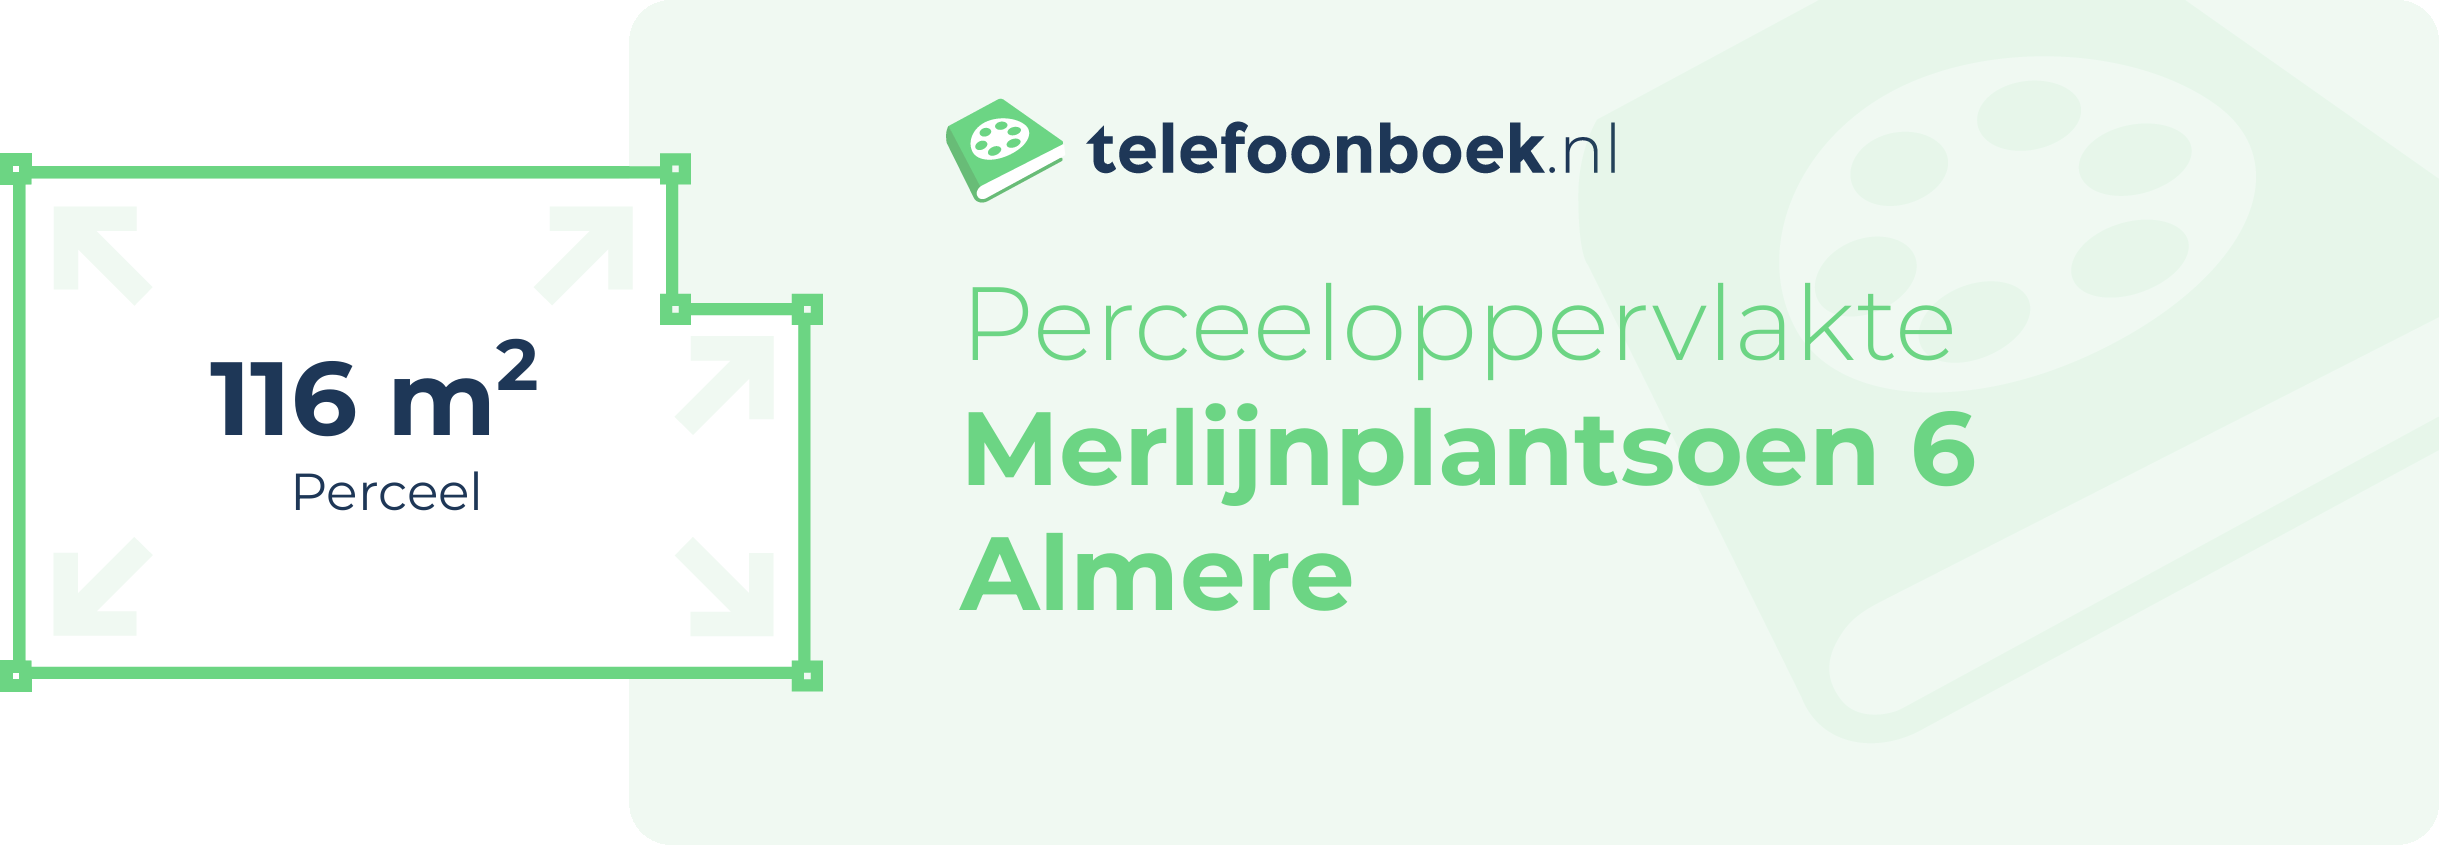 Perceeloppervlakte Merlijnplantsoen 6 Almere